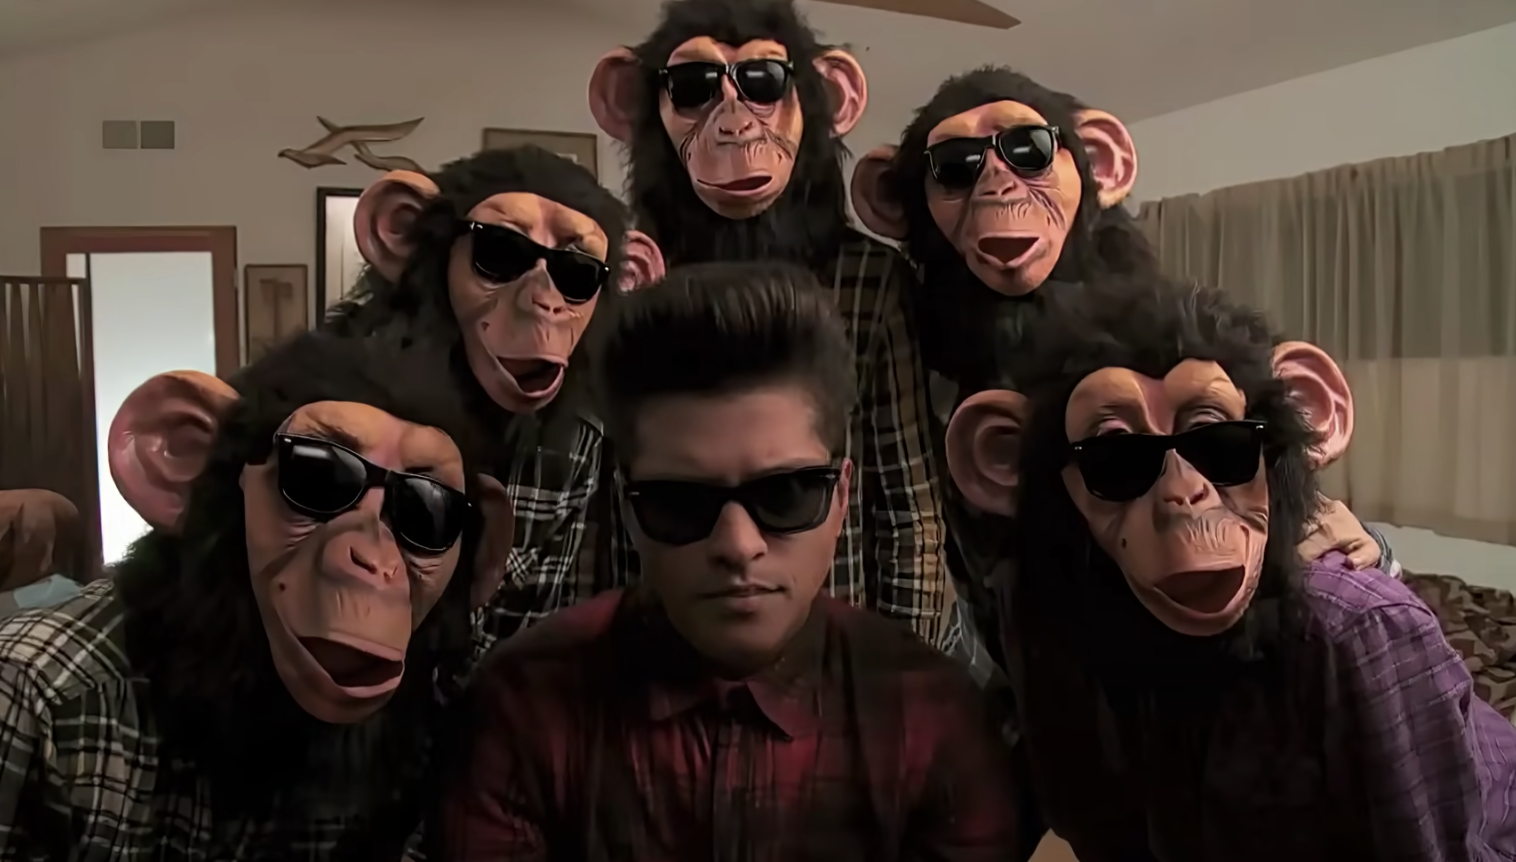 Танцующие обезьяны песня. Клип с обезьянами. Обезьяна поет.